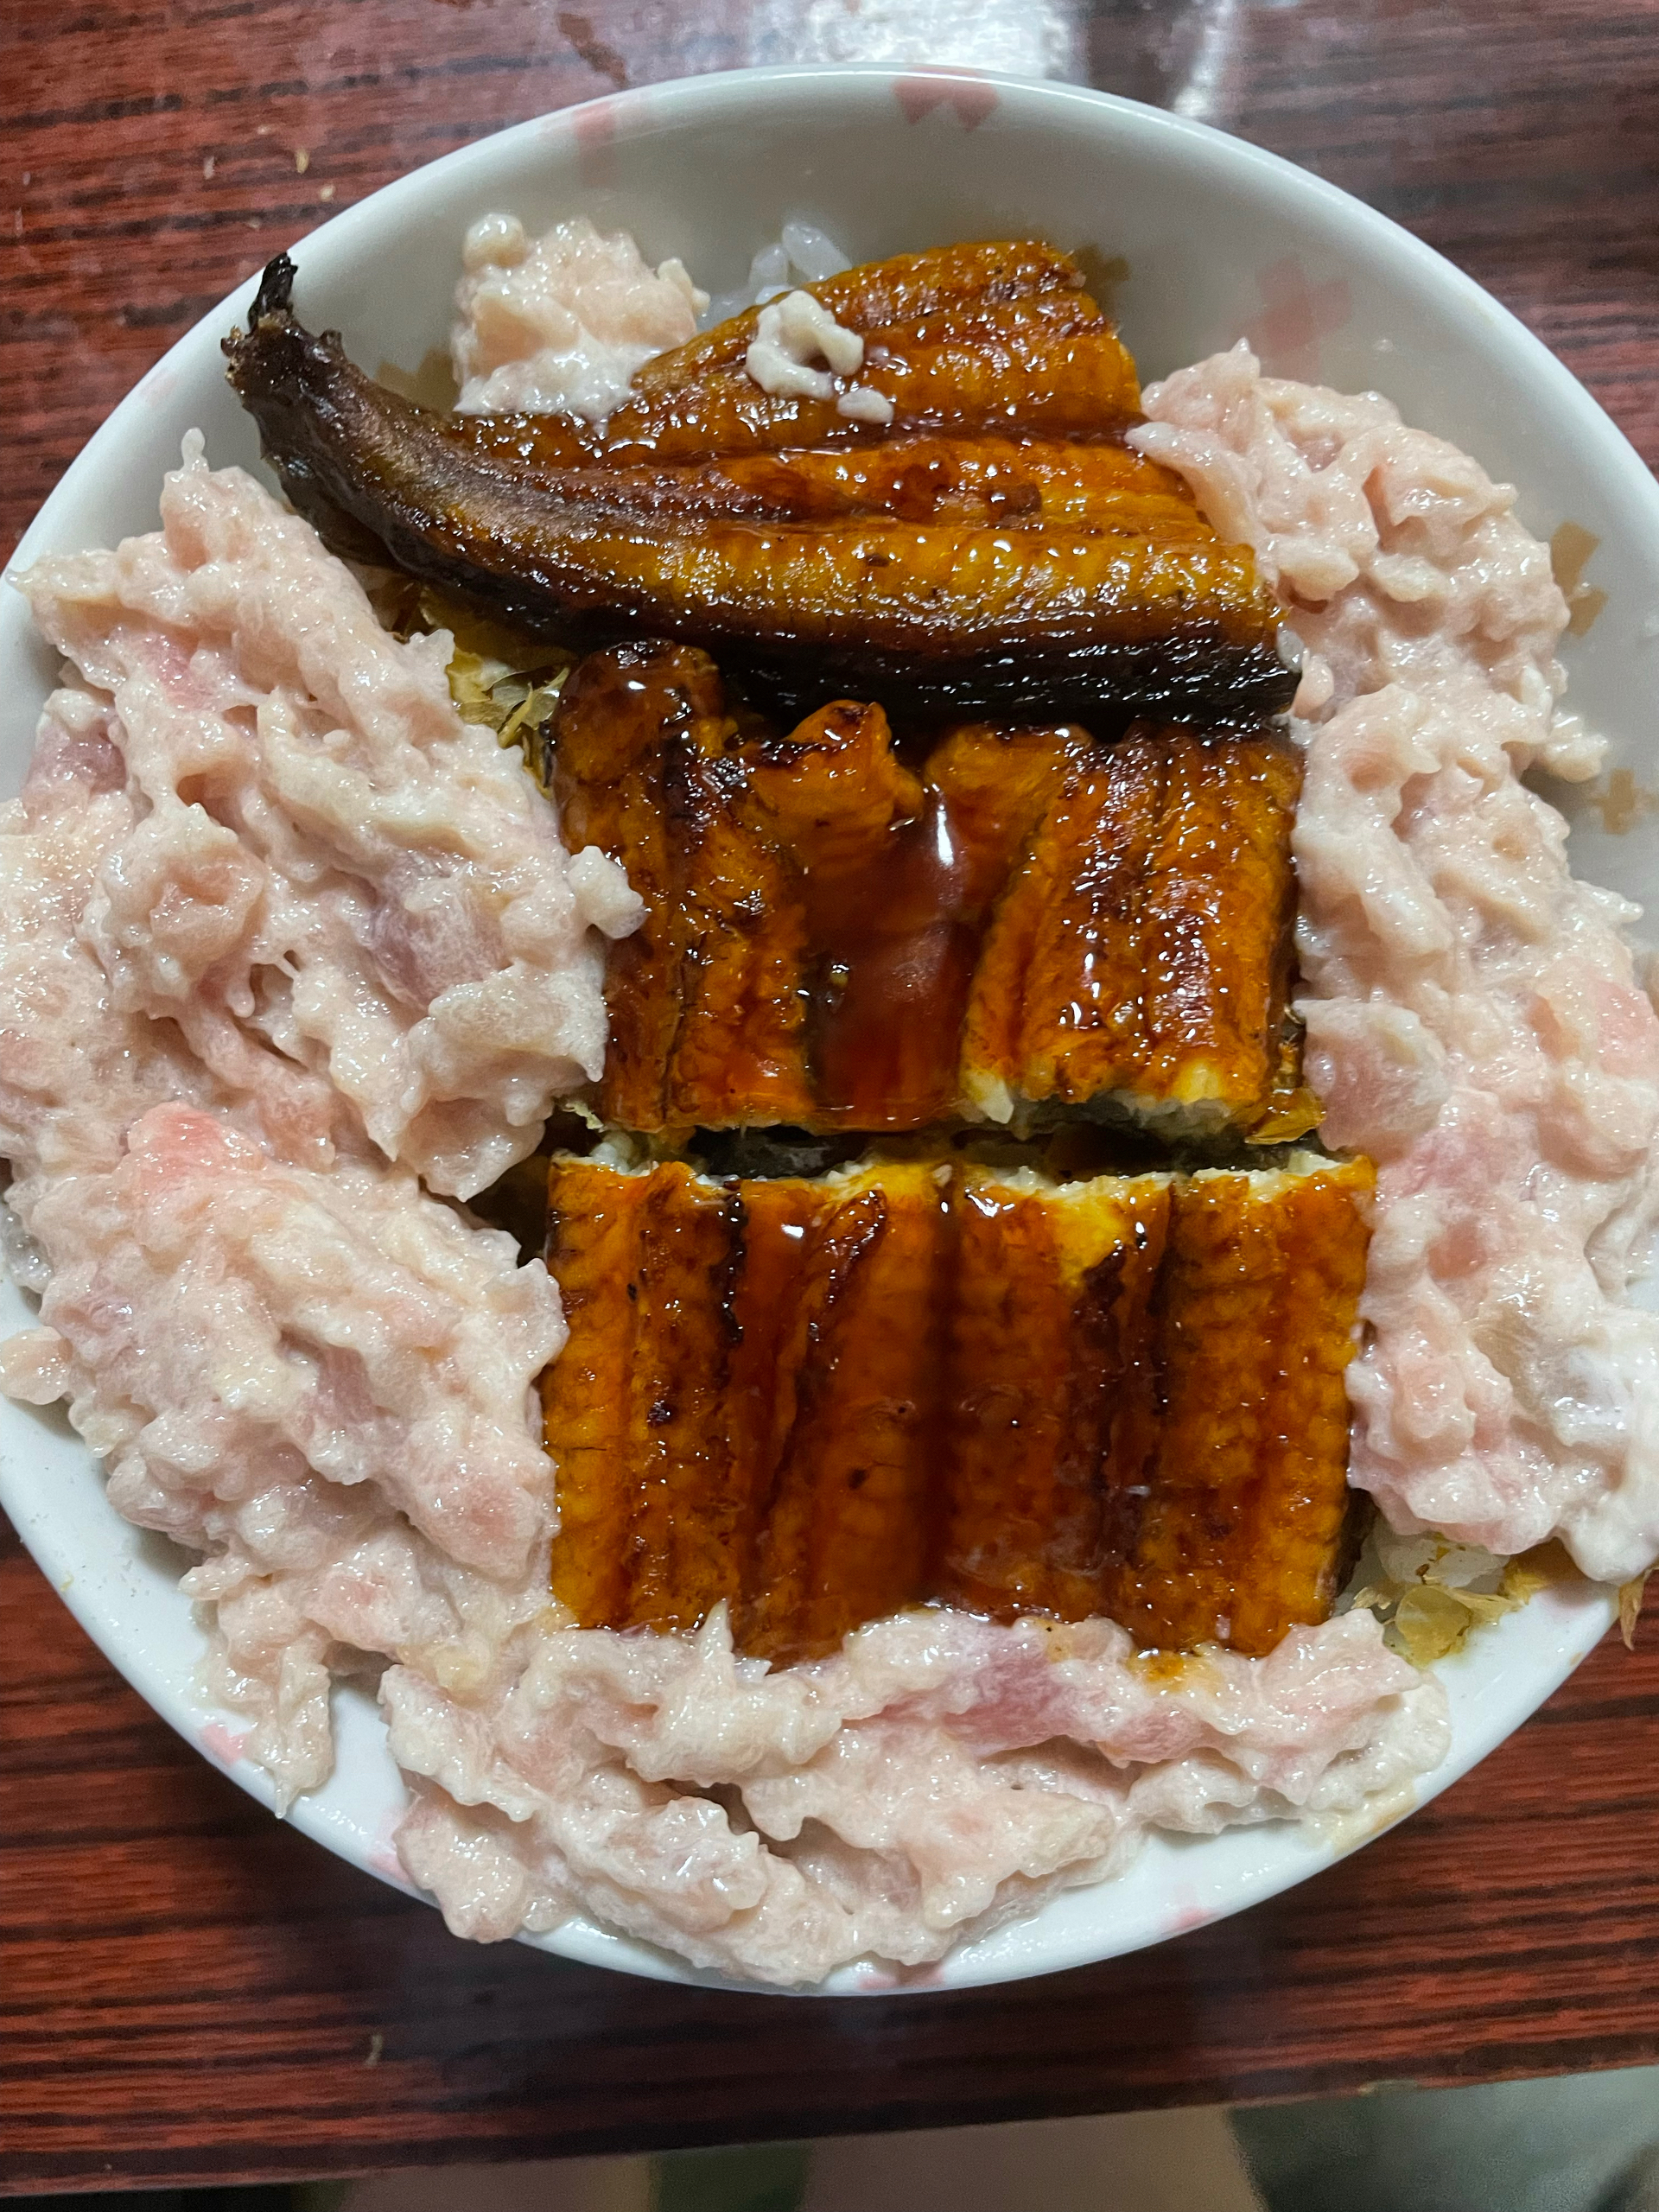 日式吞拿魚&曼魚便丼
懶人日式料理的做法